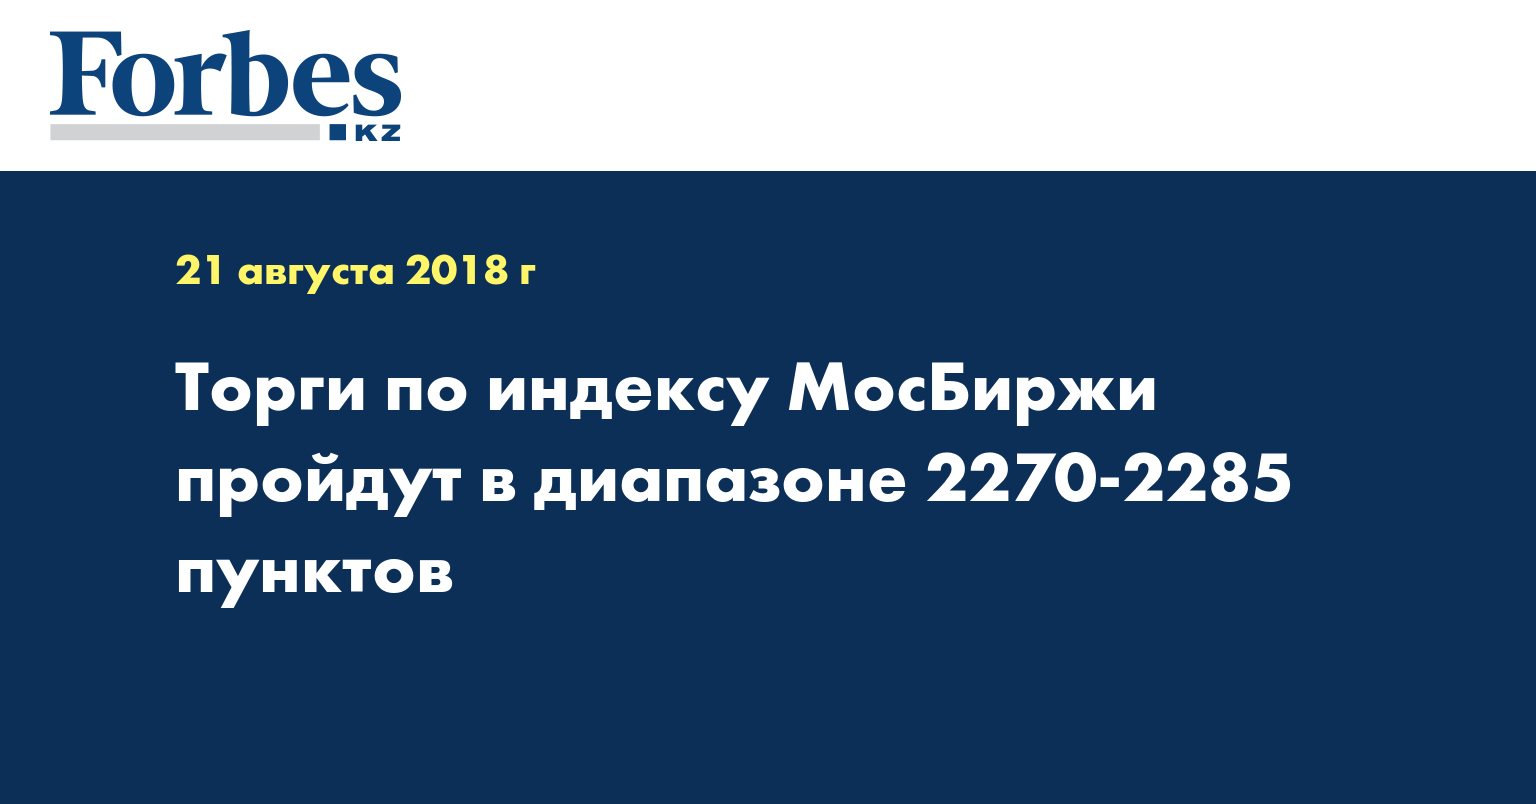 Торги по индексу МосБиржи пройдут в диапазоне 2270-2285 пунктов